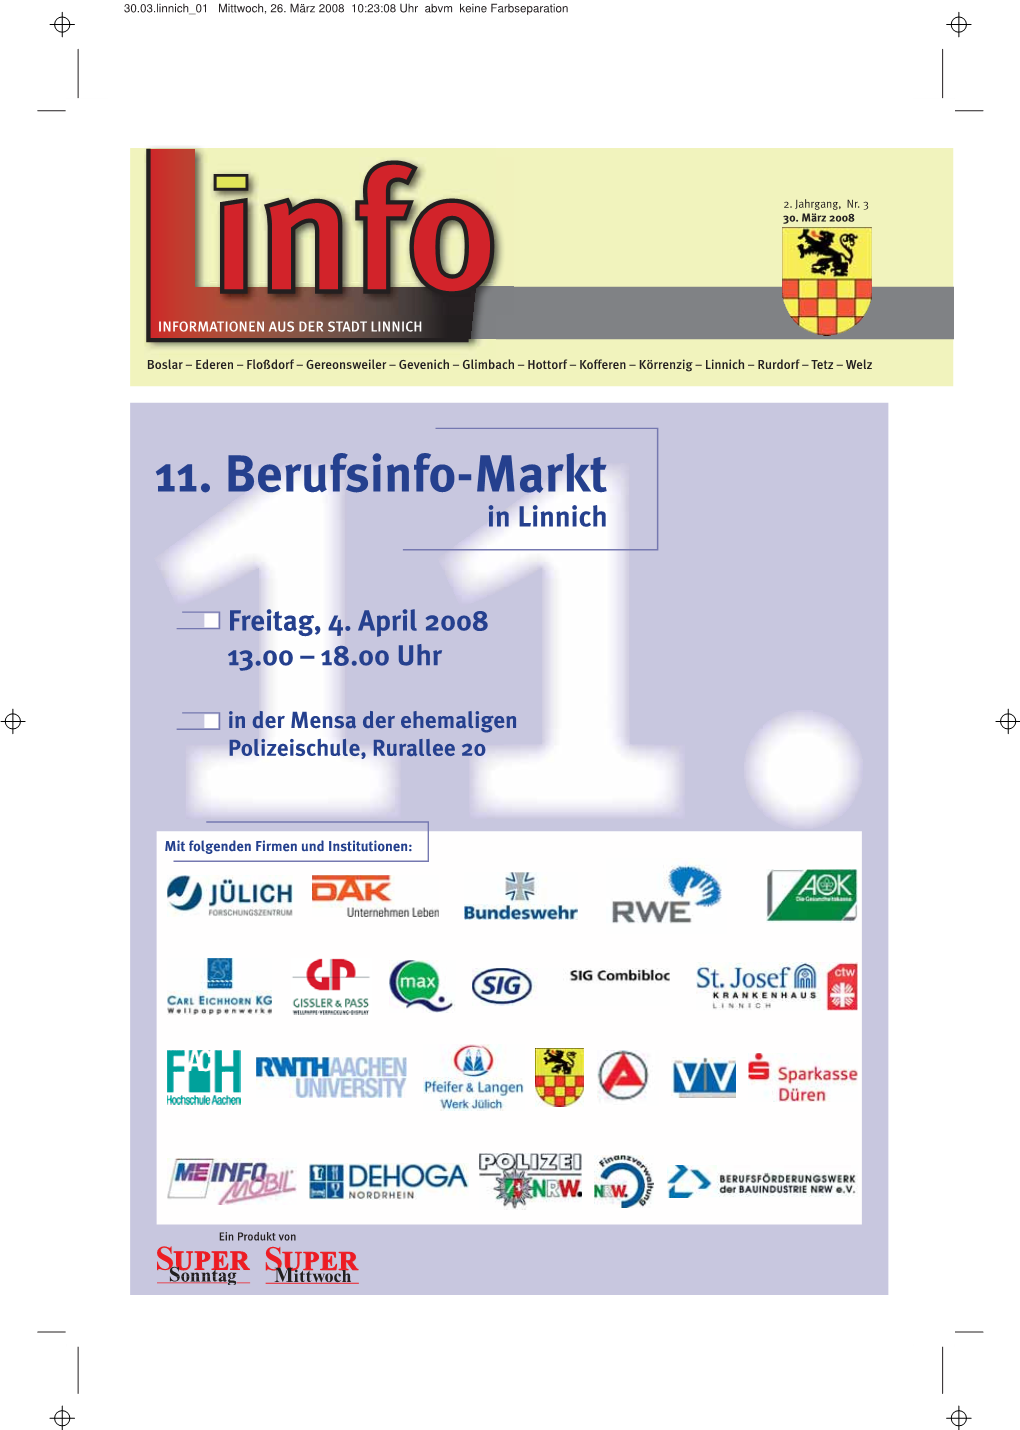 11. Berufsinfo-Markt in Linnich